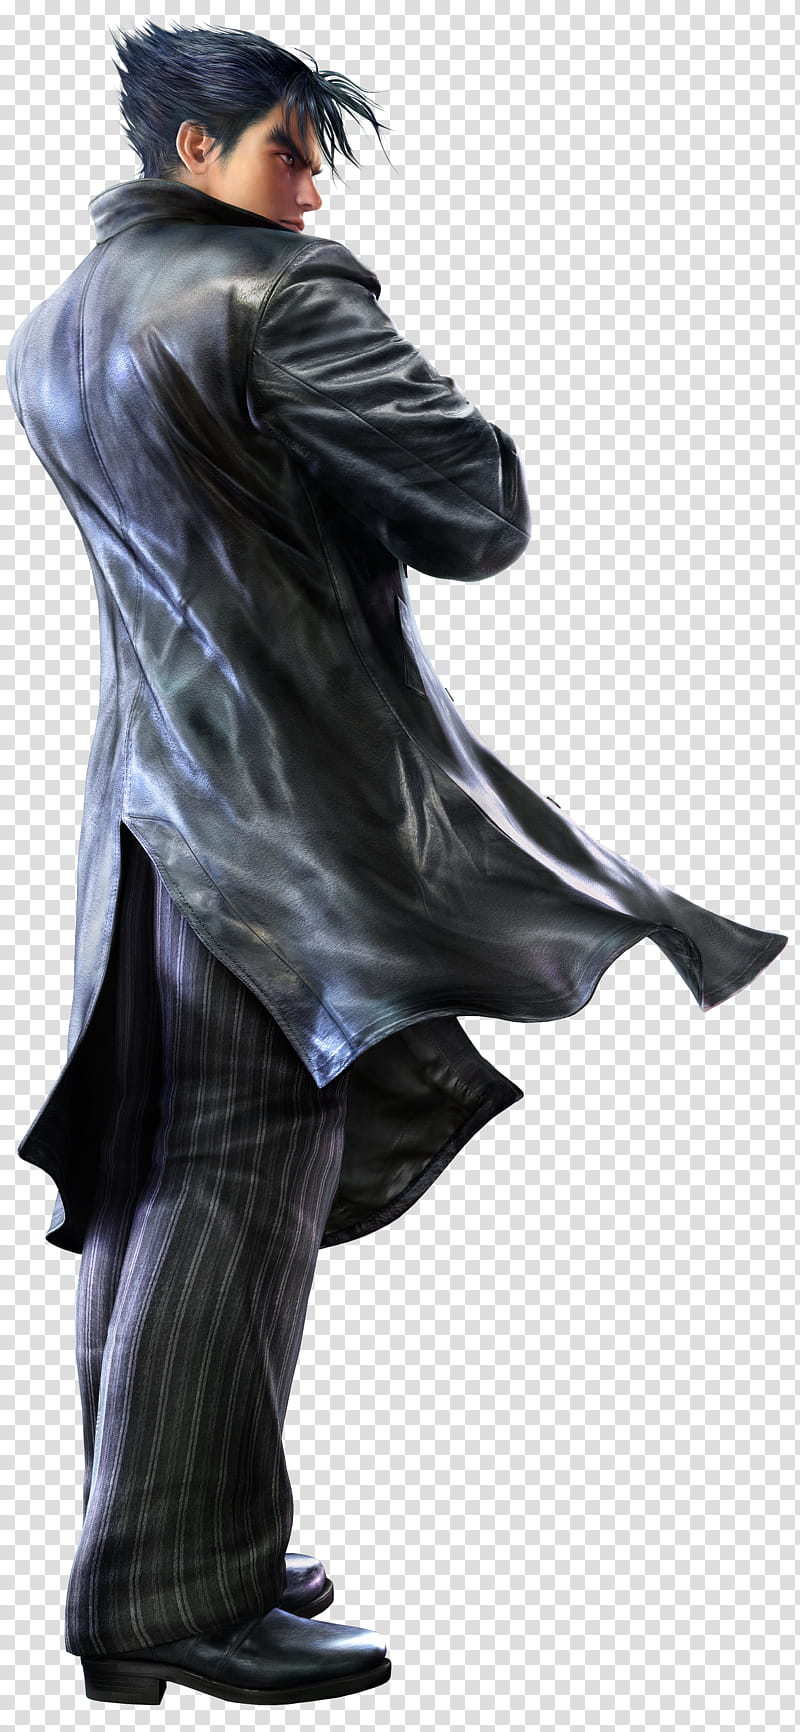 Jin Kazama Tekken  BR, man wearing black leather jacket transparent background PNG clipart